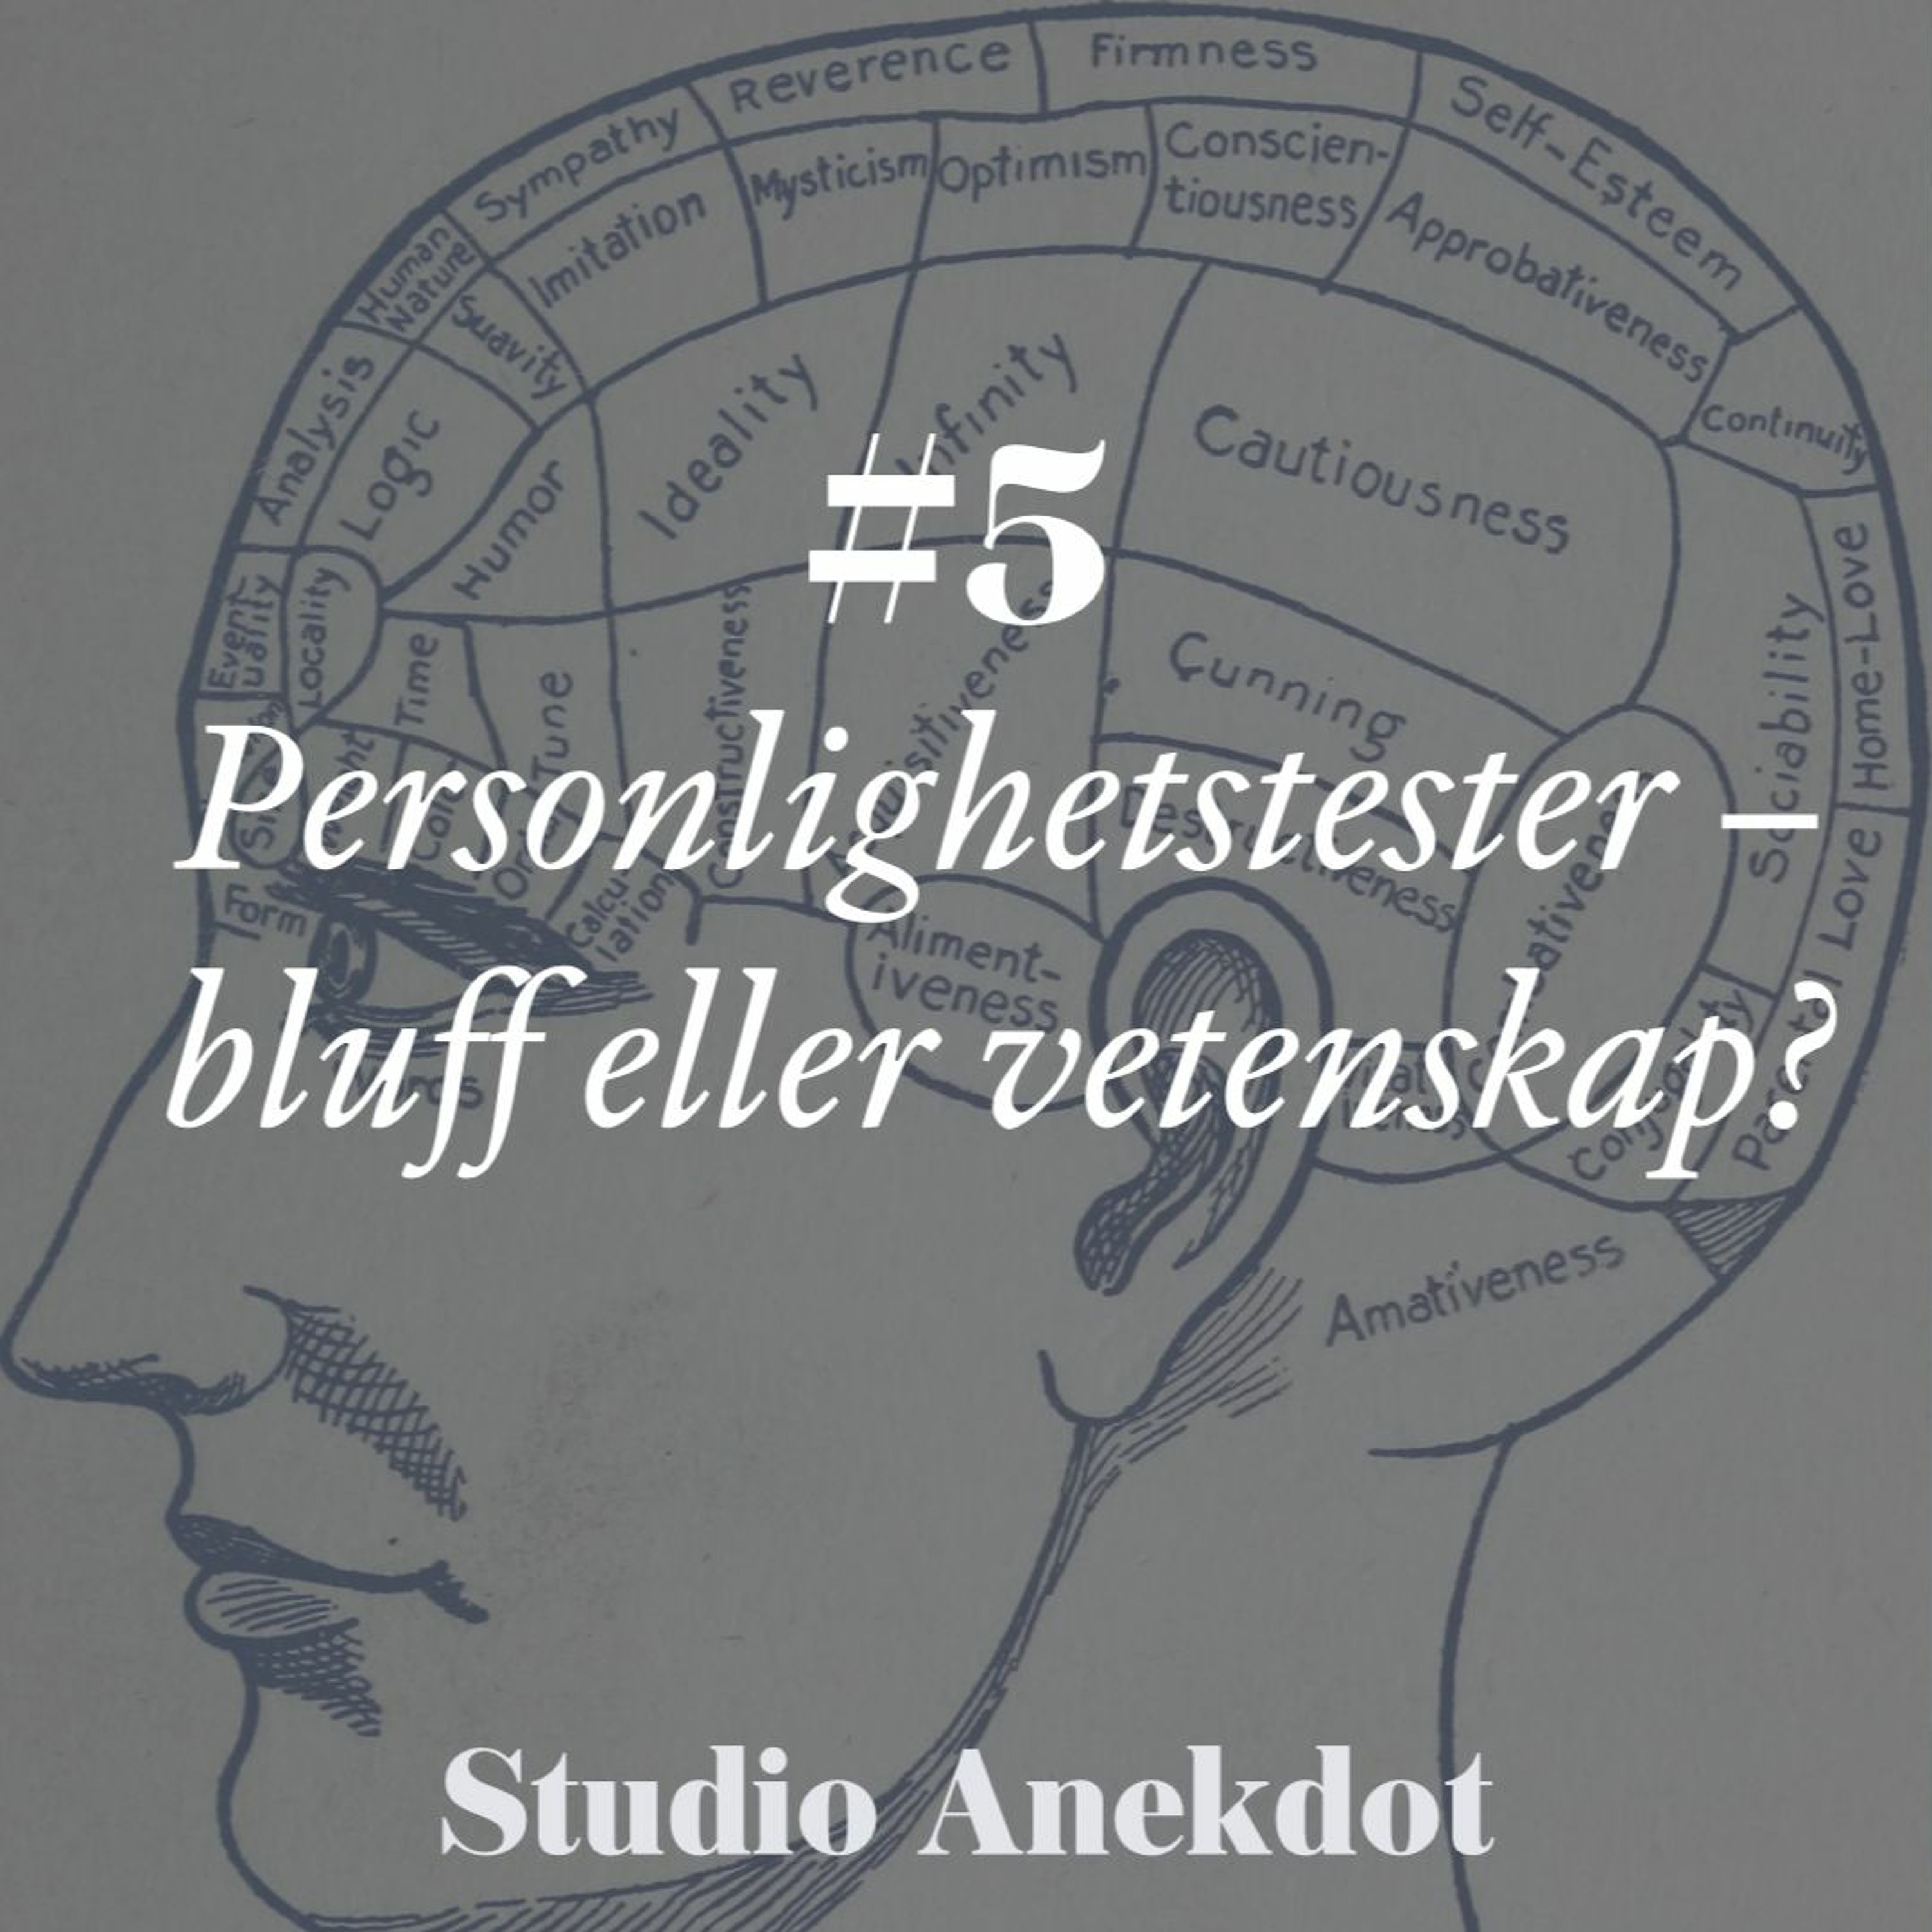 Studio Anekdot: Personlighetstester – bluff eller vetenskap?